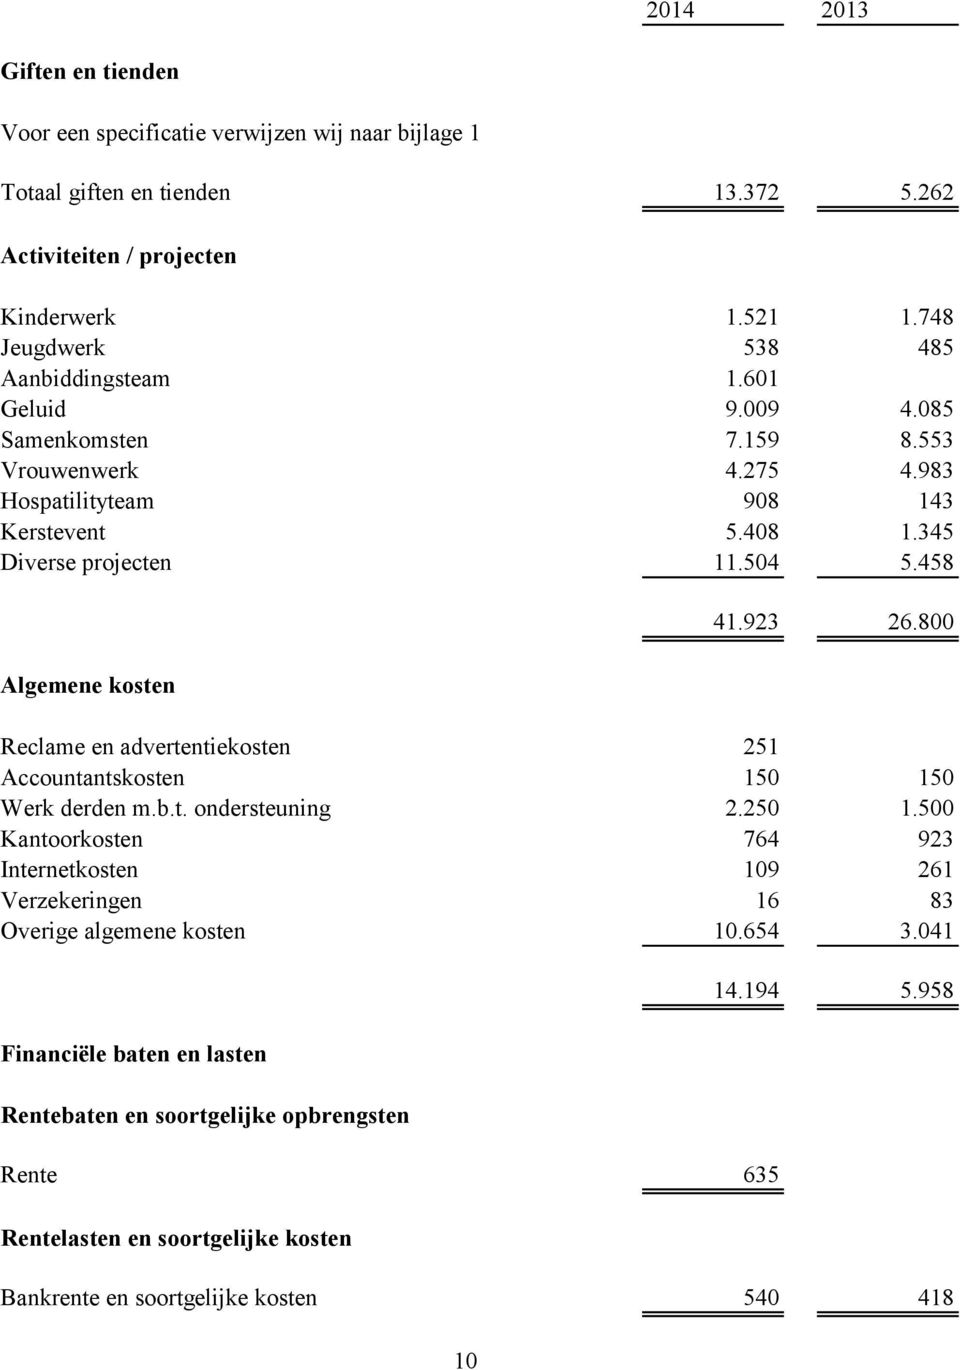 458 Algemene kosten 41.923 26.800 Reclame en advertentiekosten 251 Accountantskosten 150 150 Werk derden m.b.t. ondersteuning 2.250 1.